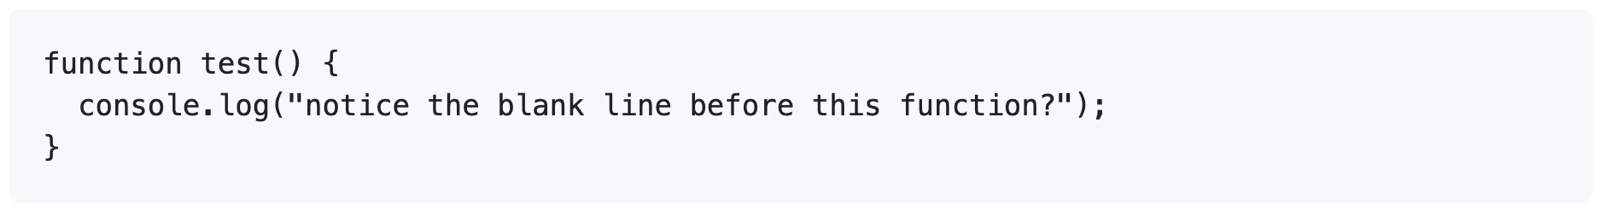 렌더링된 GitHub Markdown 스크린샷은 3중 백틱으로 인해 코드 블록이 원시 서식으로 렌더링되는 방식을 보여 줍니다. 블록은 "함수 테스트() {"로 시작합니다.